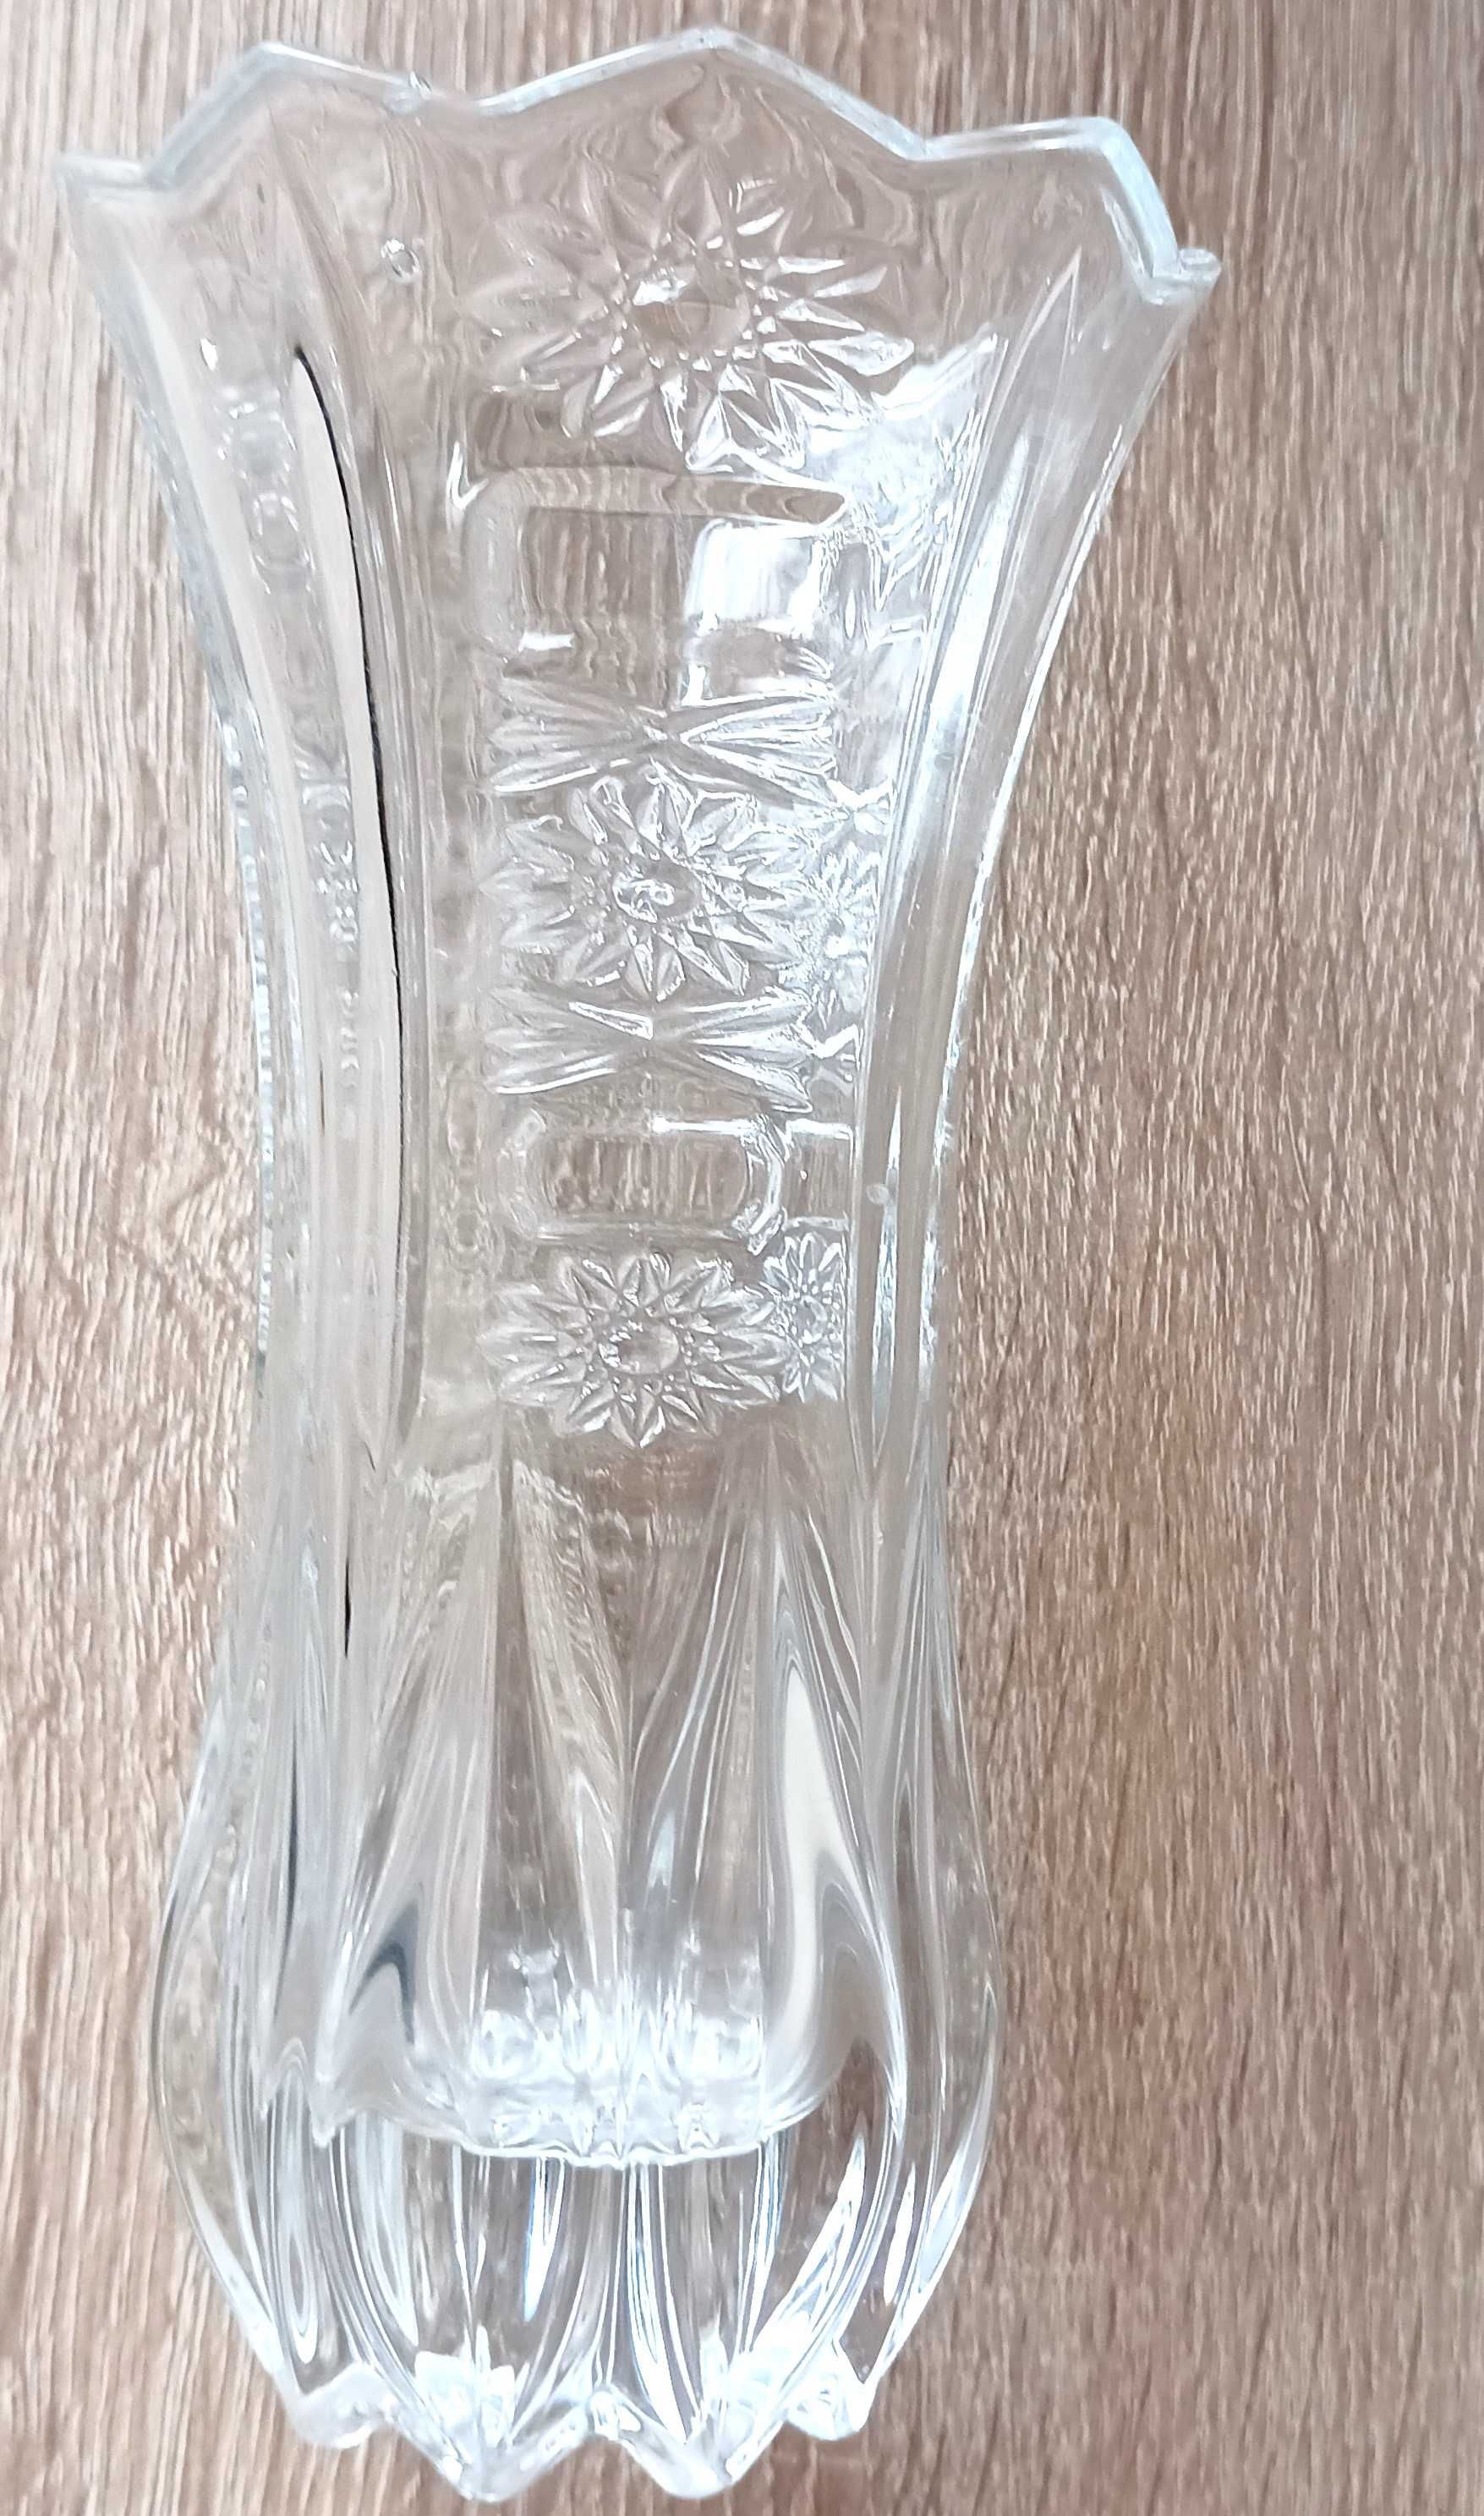 Kryształowy wazon średniej wielkości